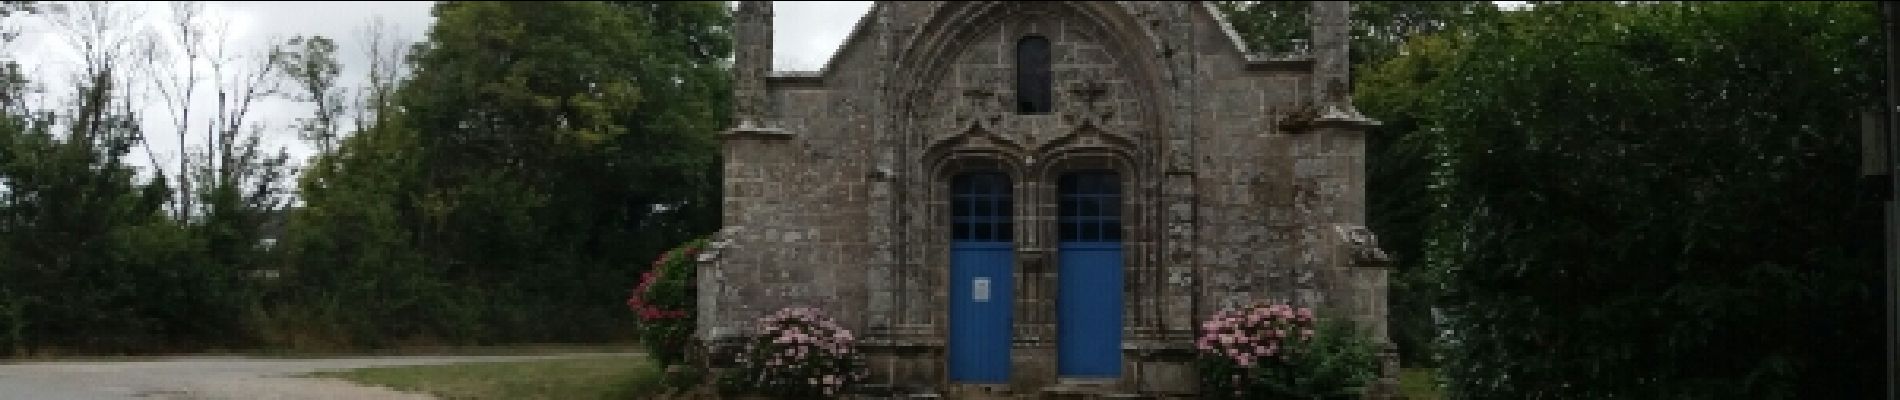 Point d'intérêt Ambon - Chapelle de Brouel - Photo